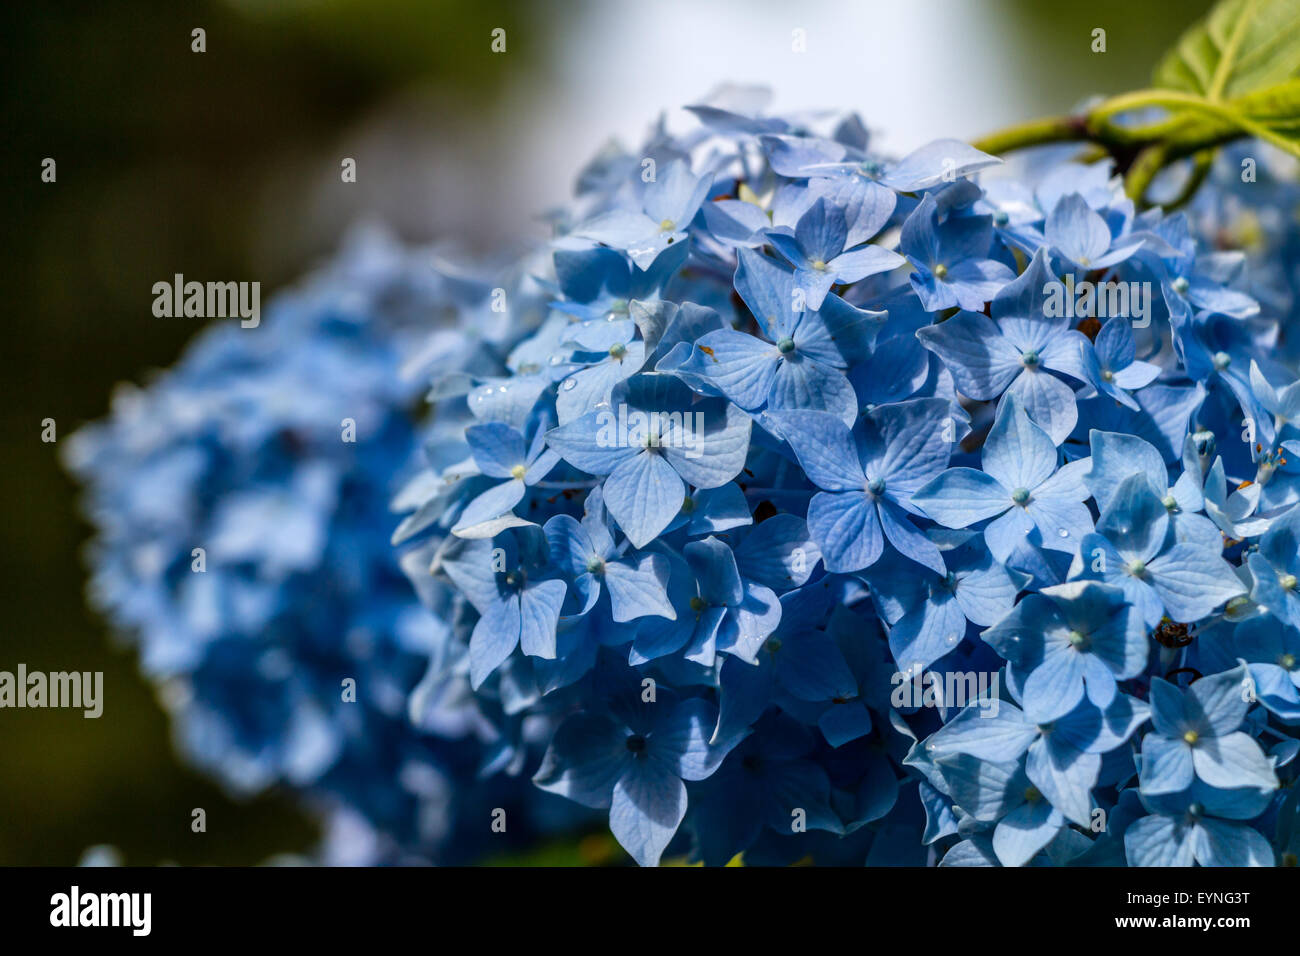 Hortensie oder Hortensia blaue Blume Stockfoto